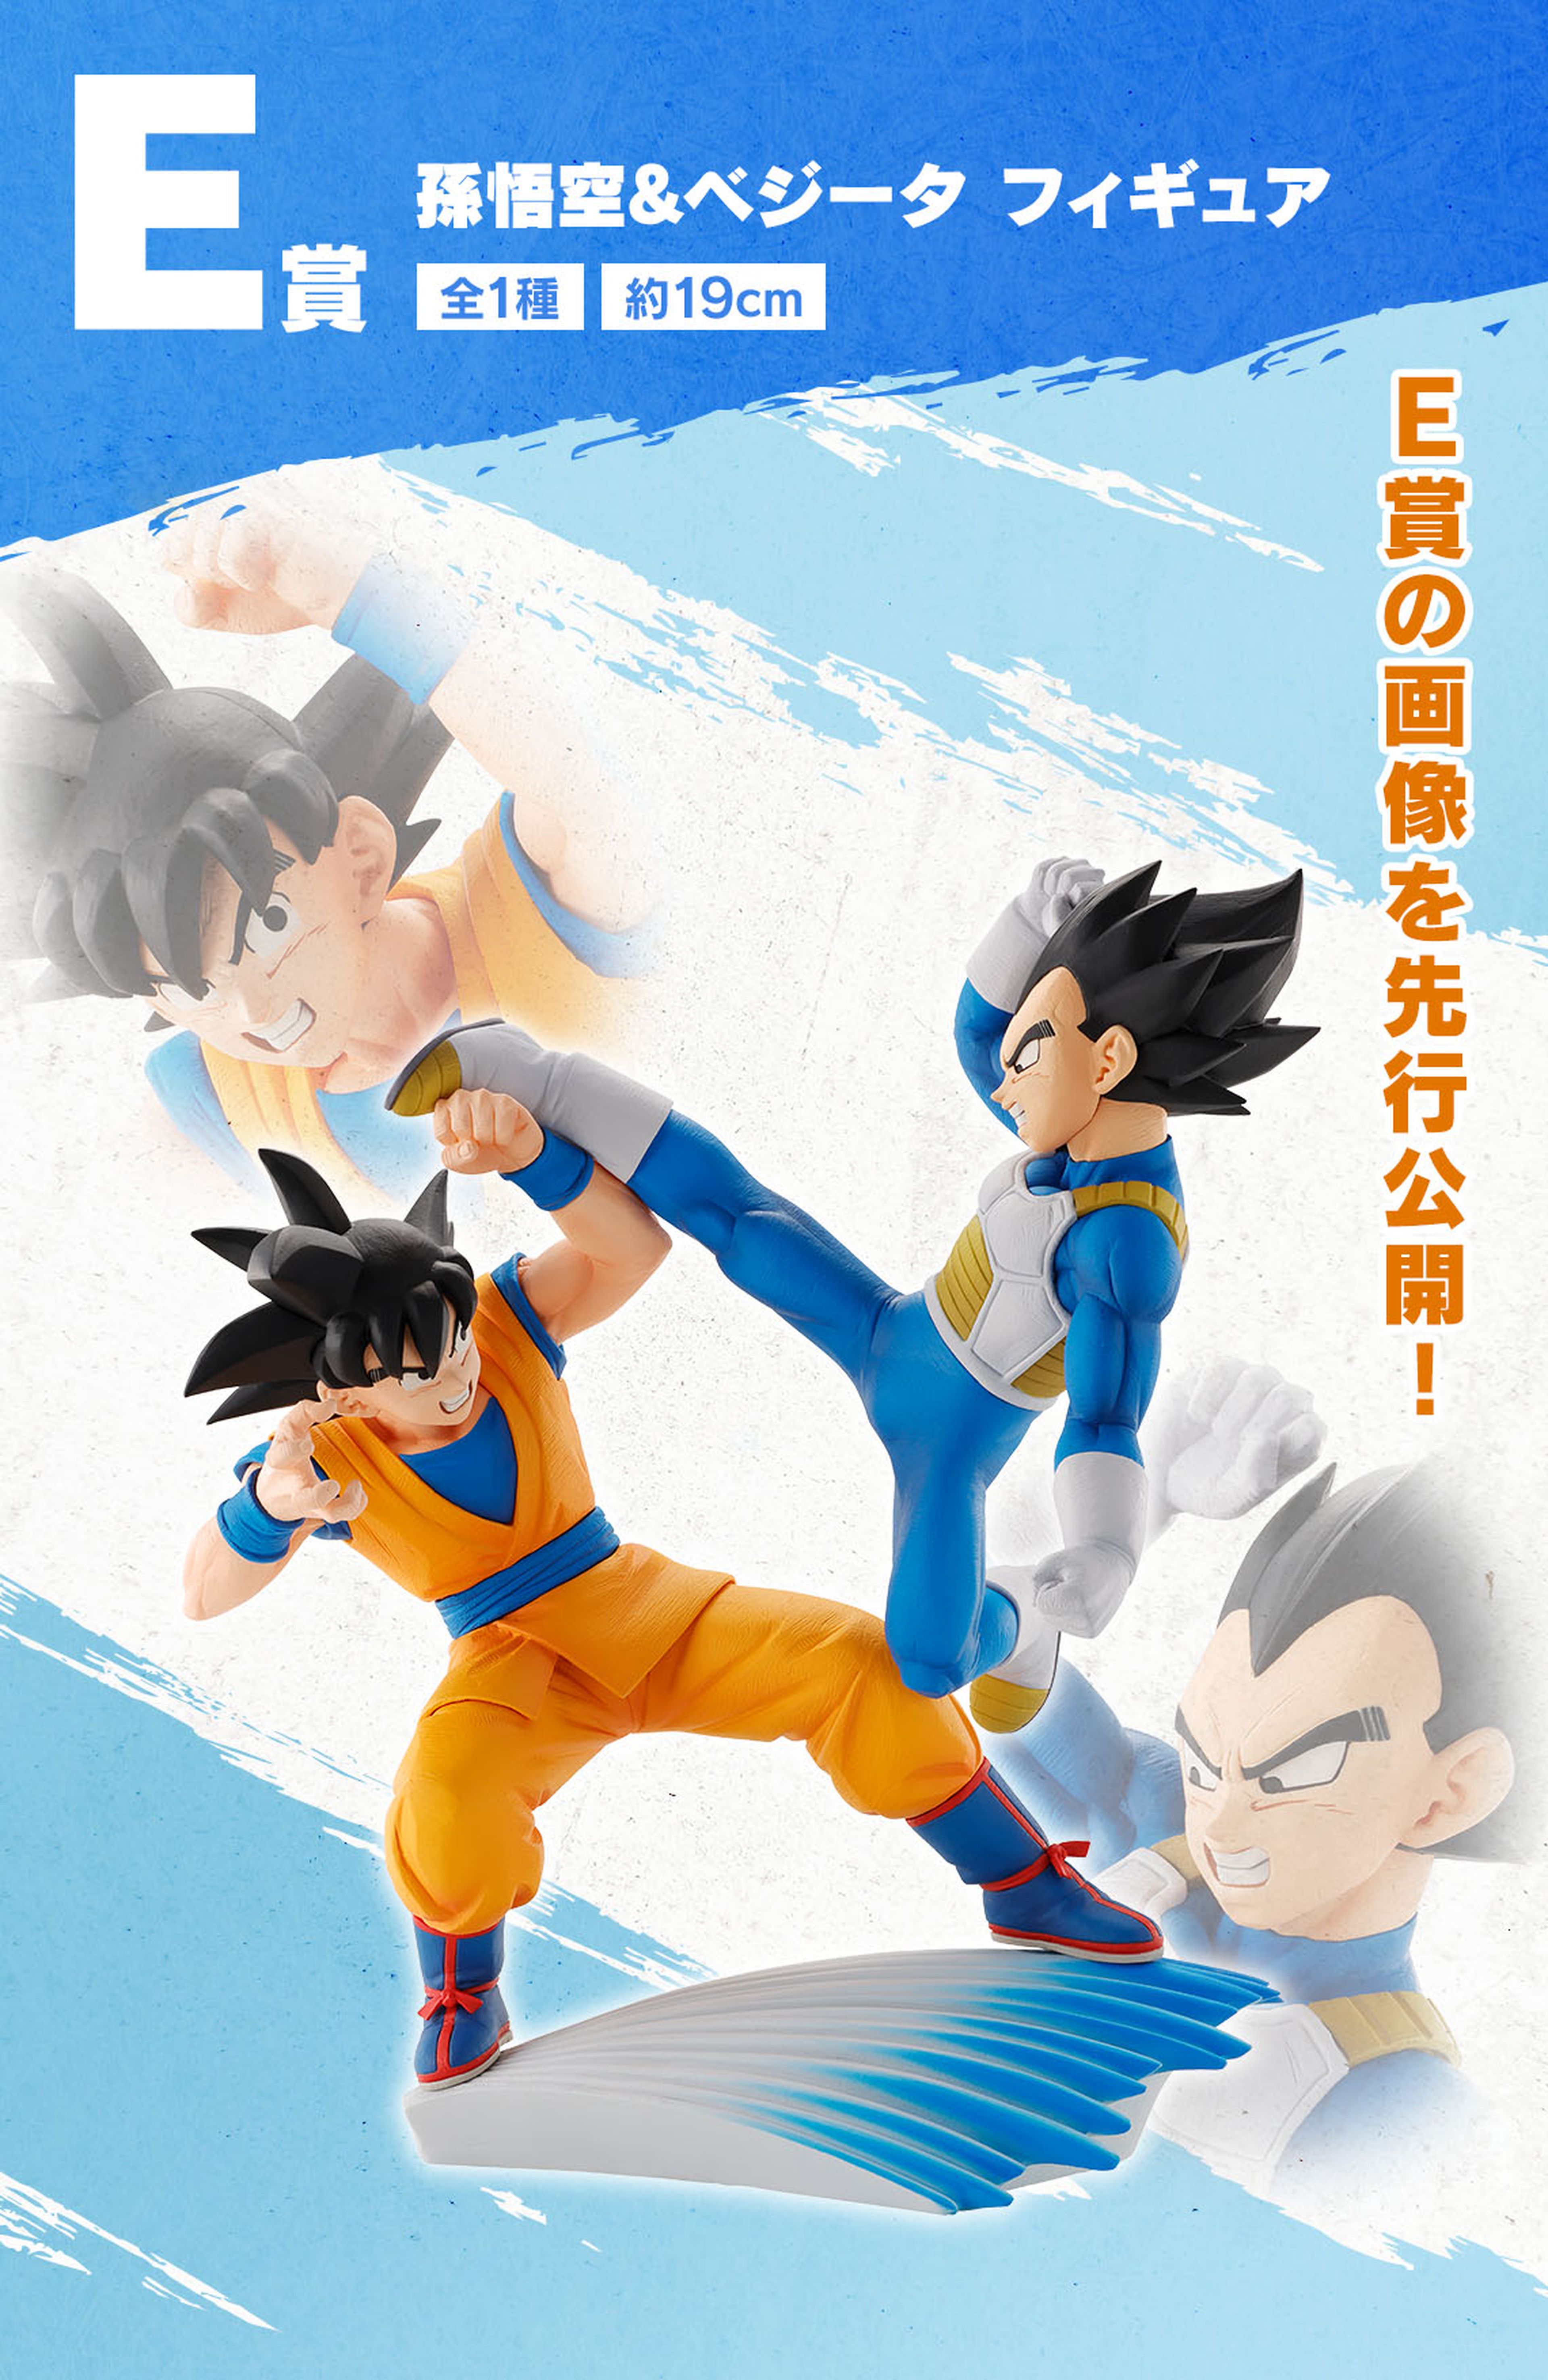 Dragon Ball Daima presenta la primera imagen de los nuevos Goku y Vegeta adultos en el mundo de las figuras oficiales de la serie